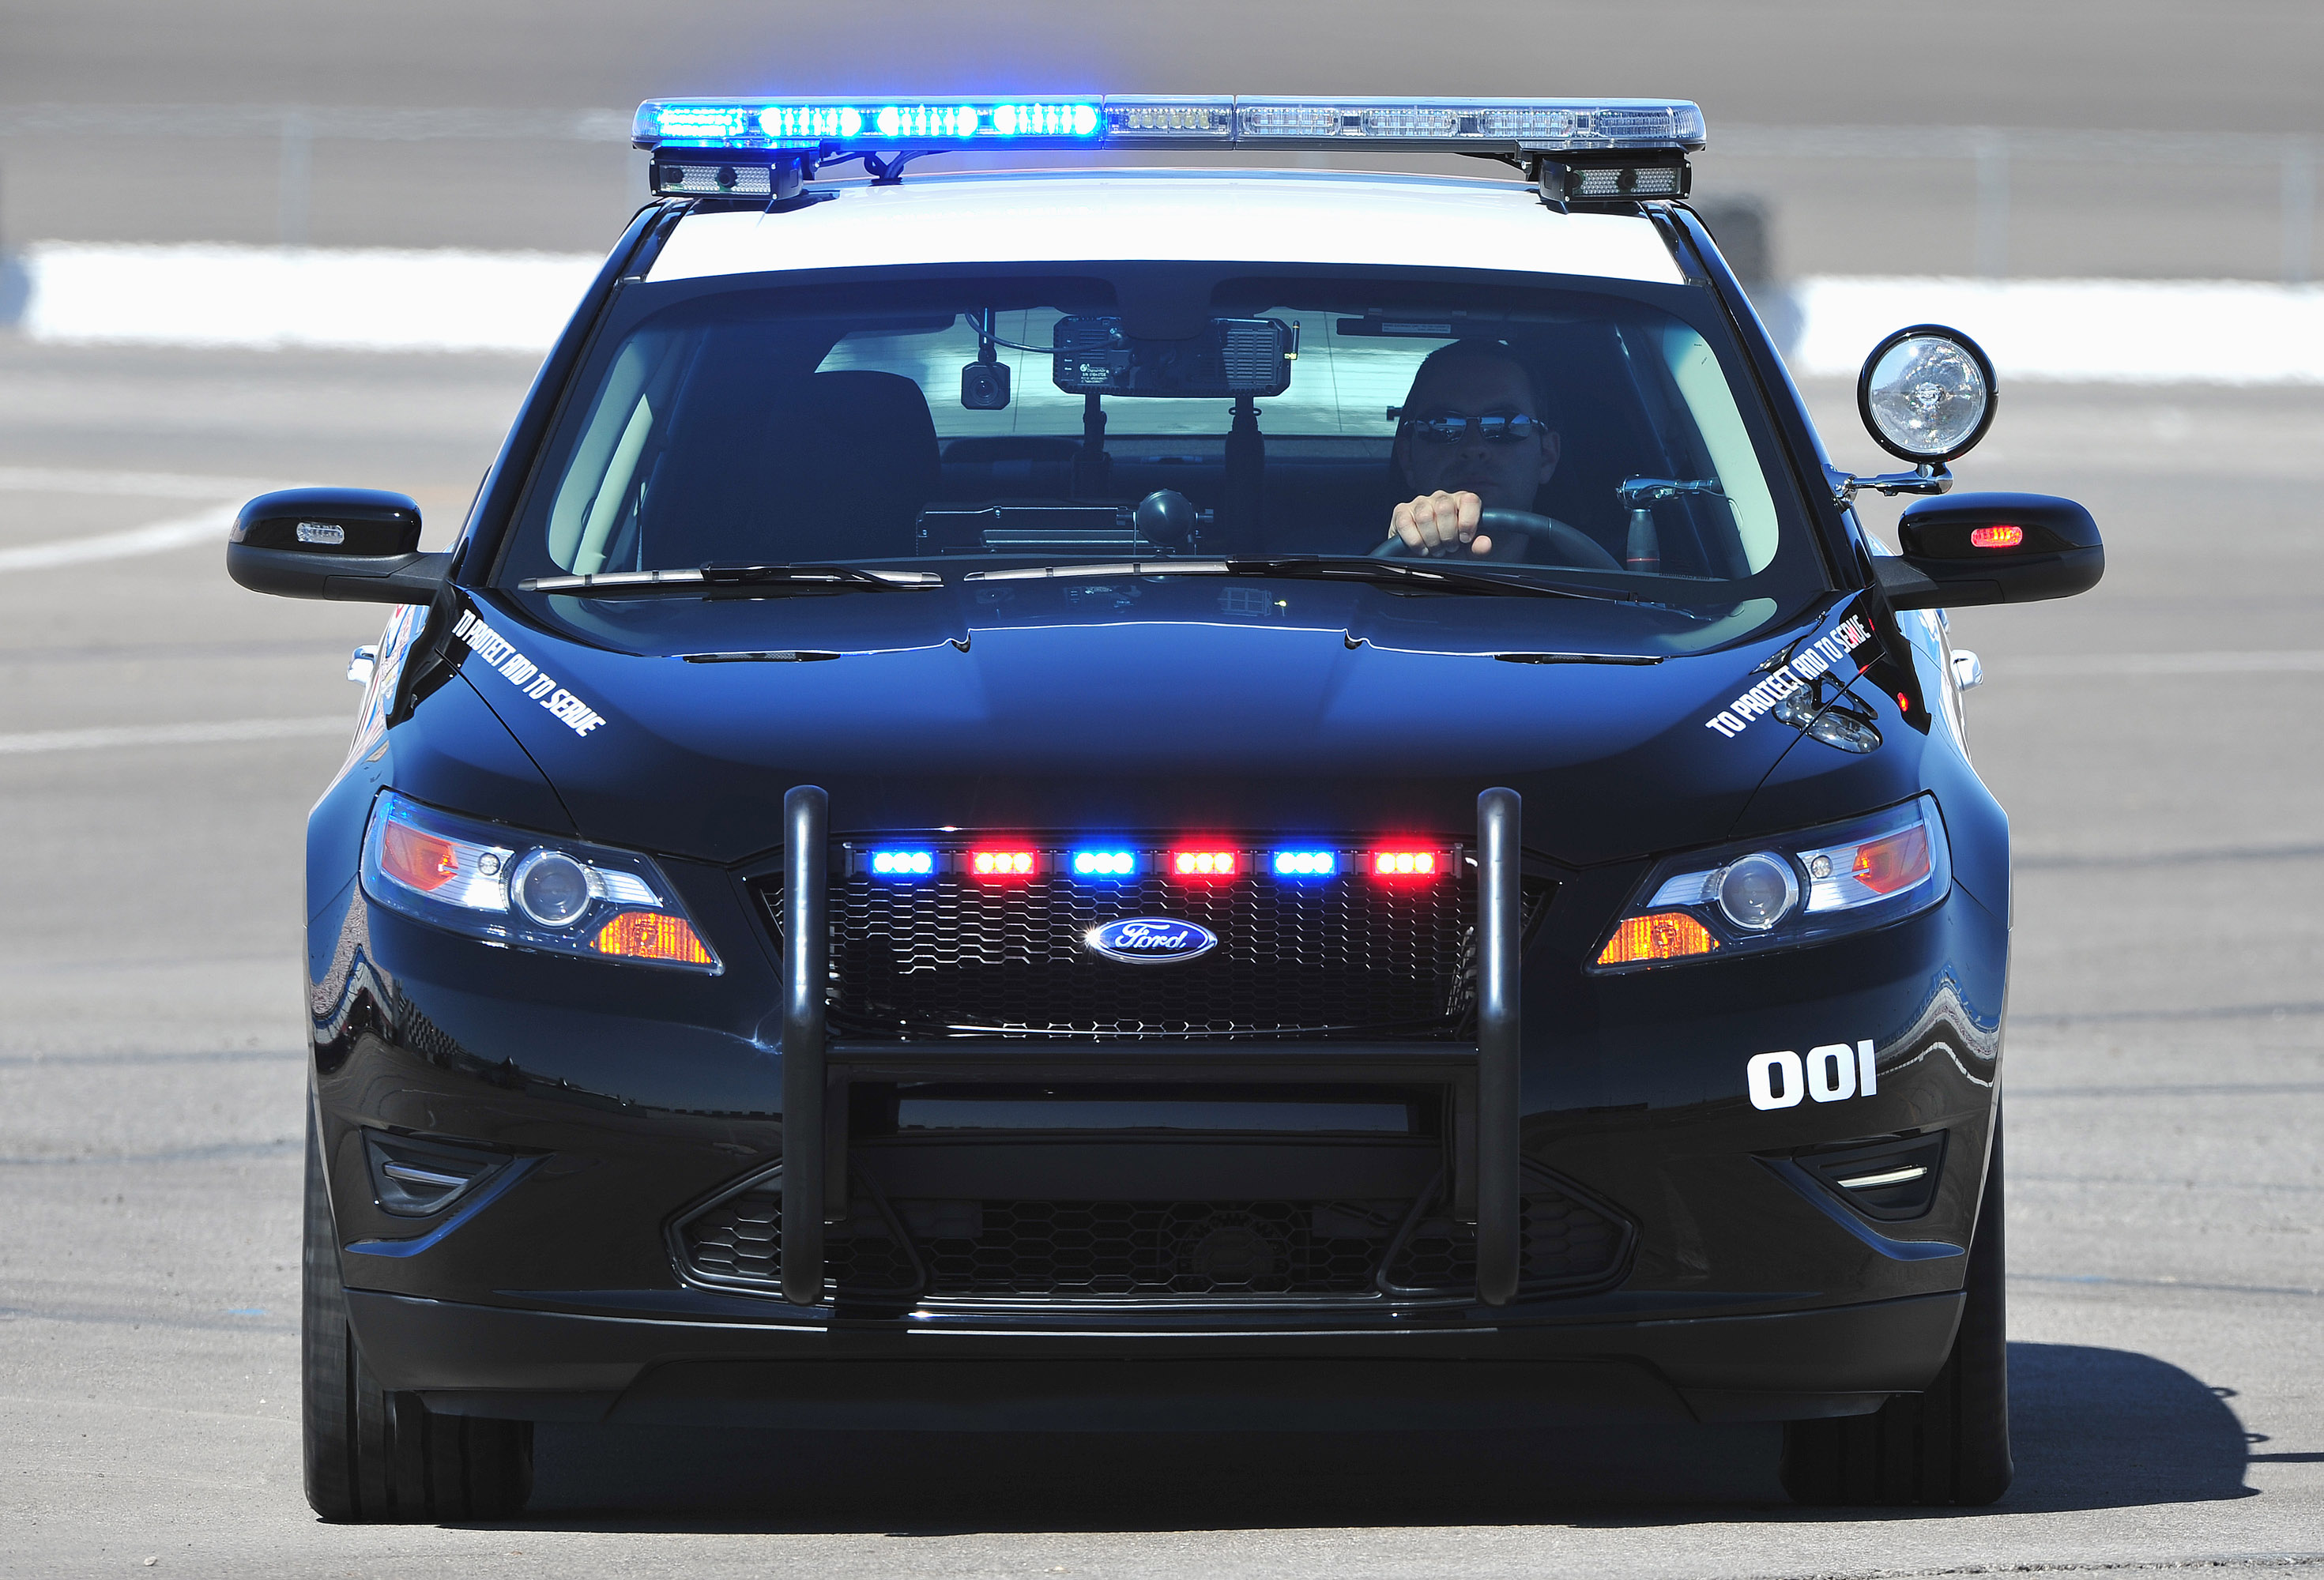 Полицейская машина автомобиля